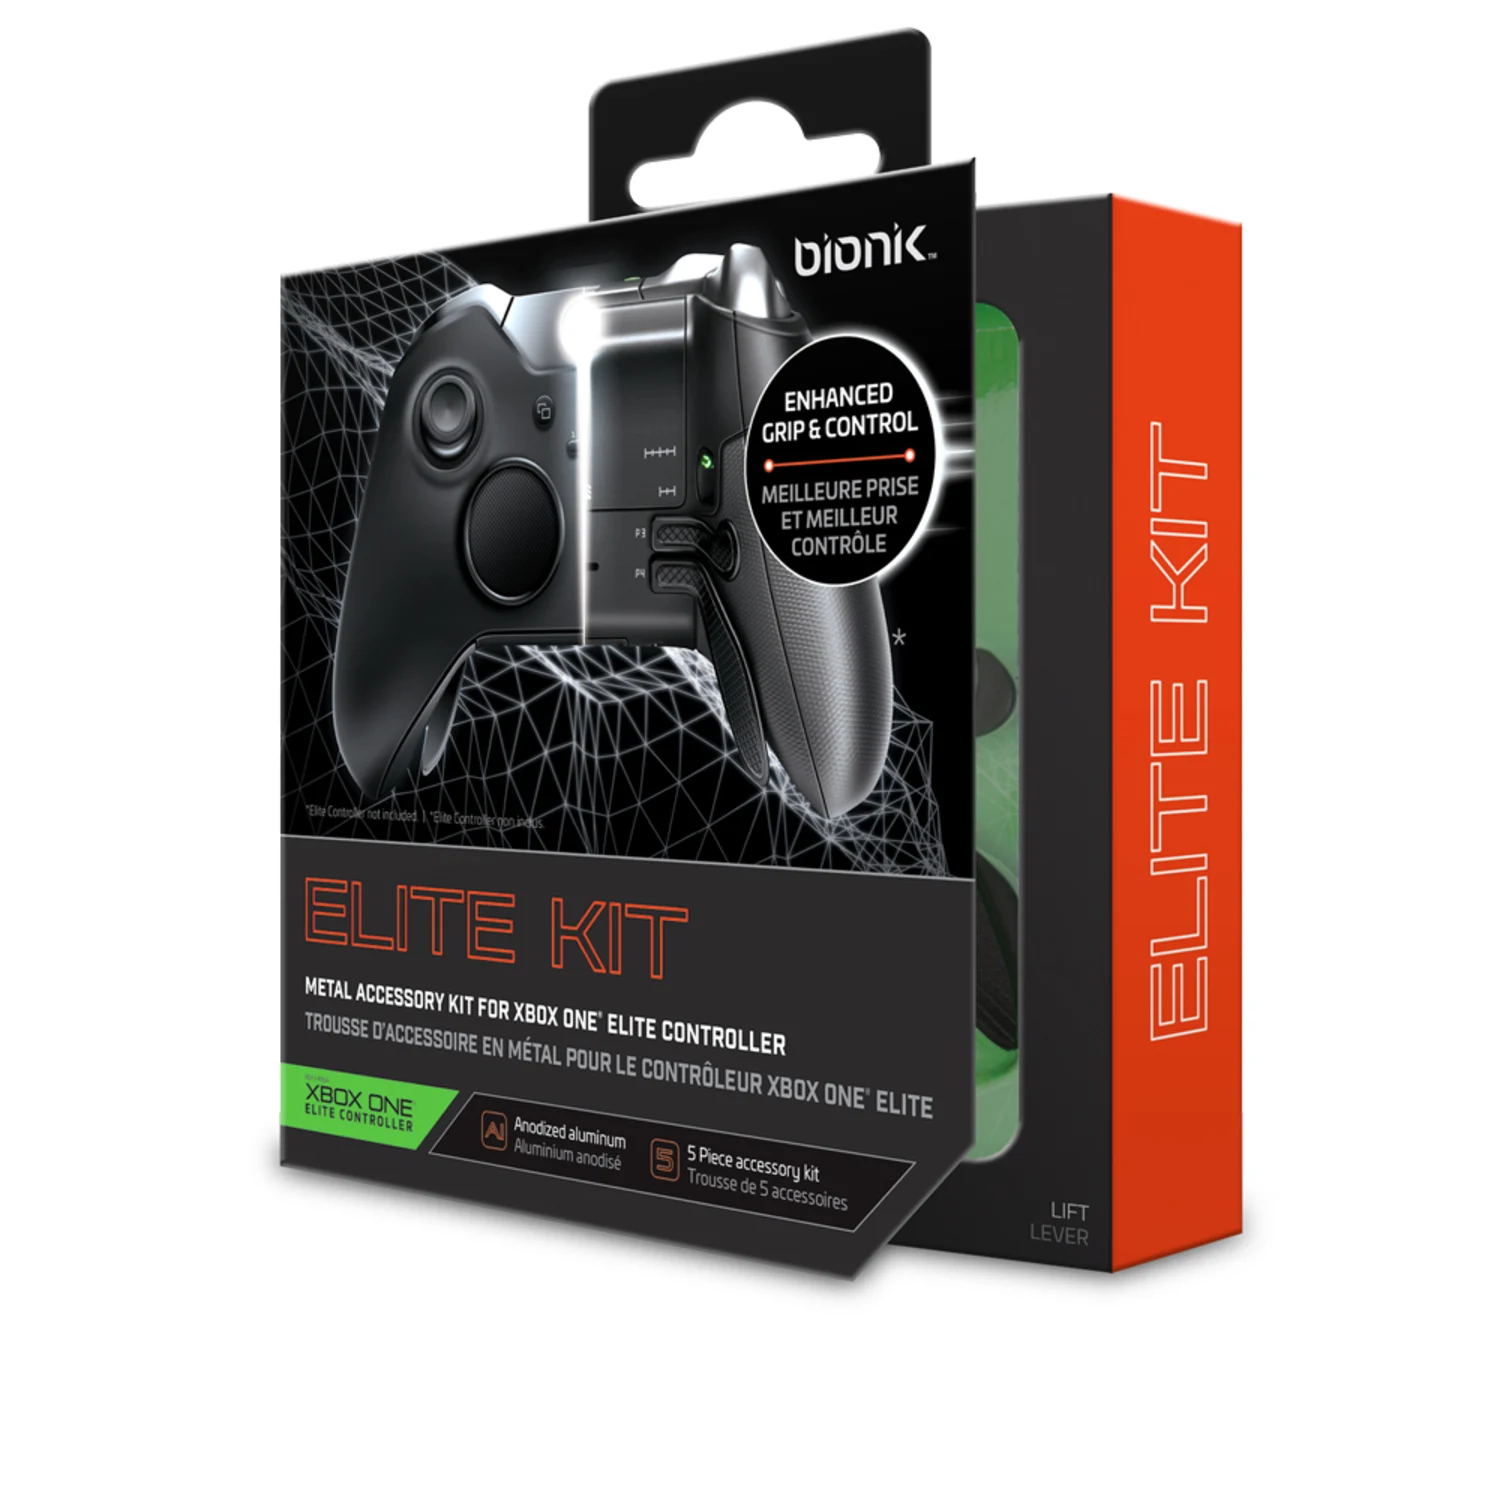 Kit de Botões Controle Elite Xbox One Bionik BK 9008 - Preto